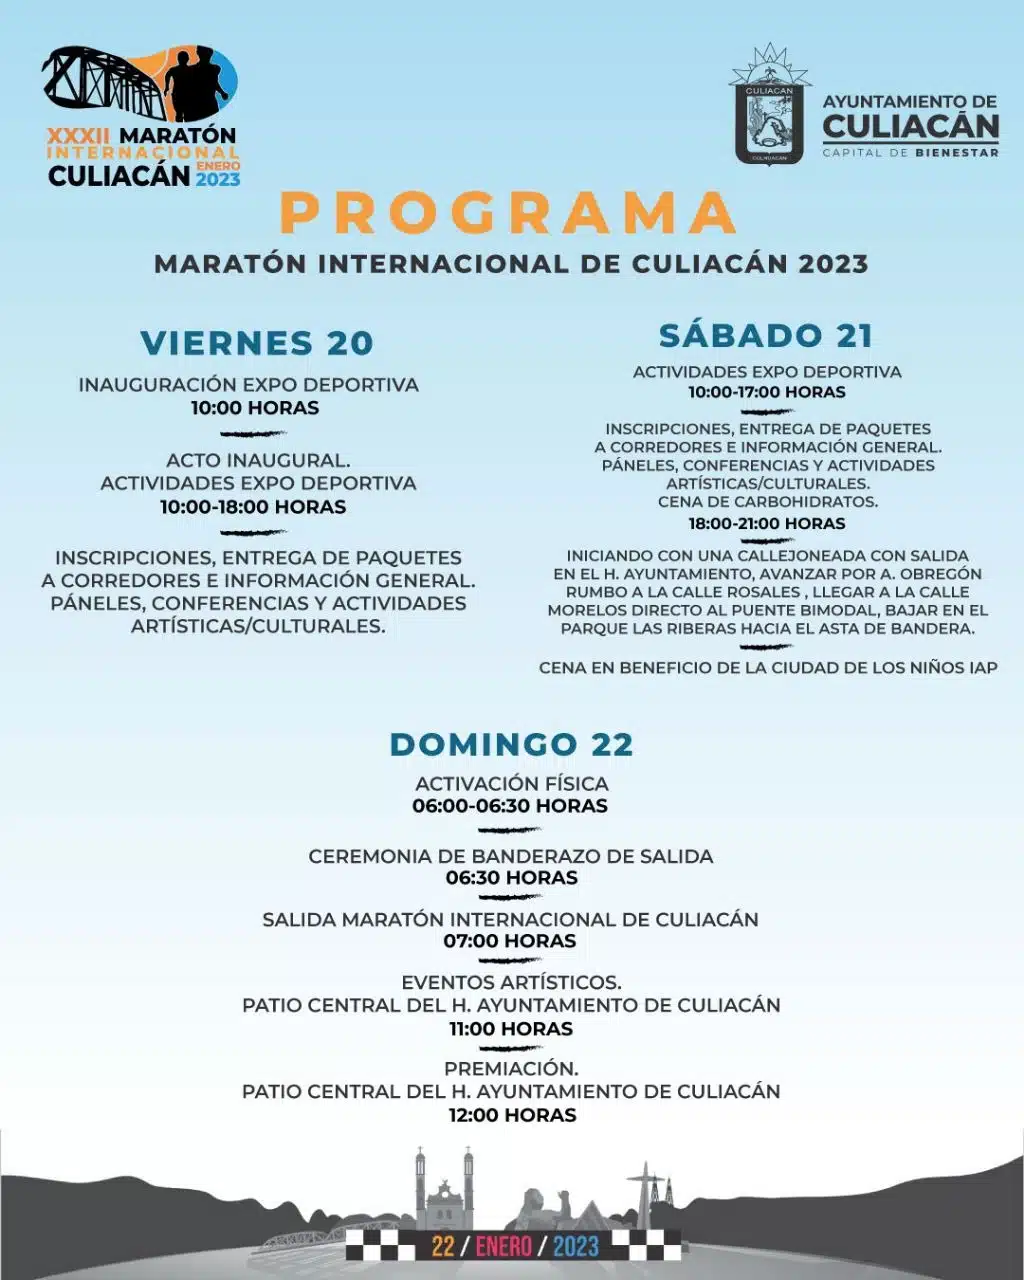 ¡Actividades listas! Este es el calendario de la Expo Deportiva del Maratón Internacional de Culiacán 